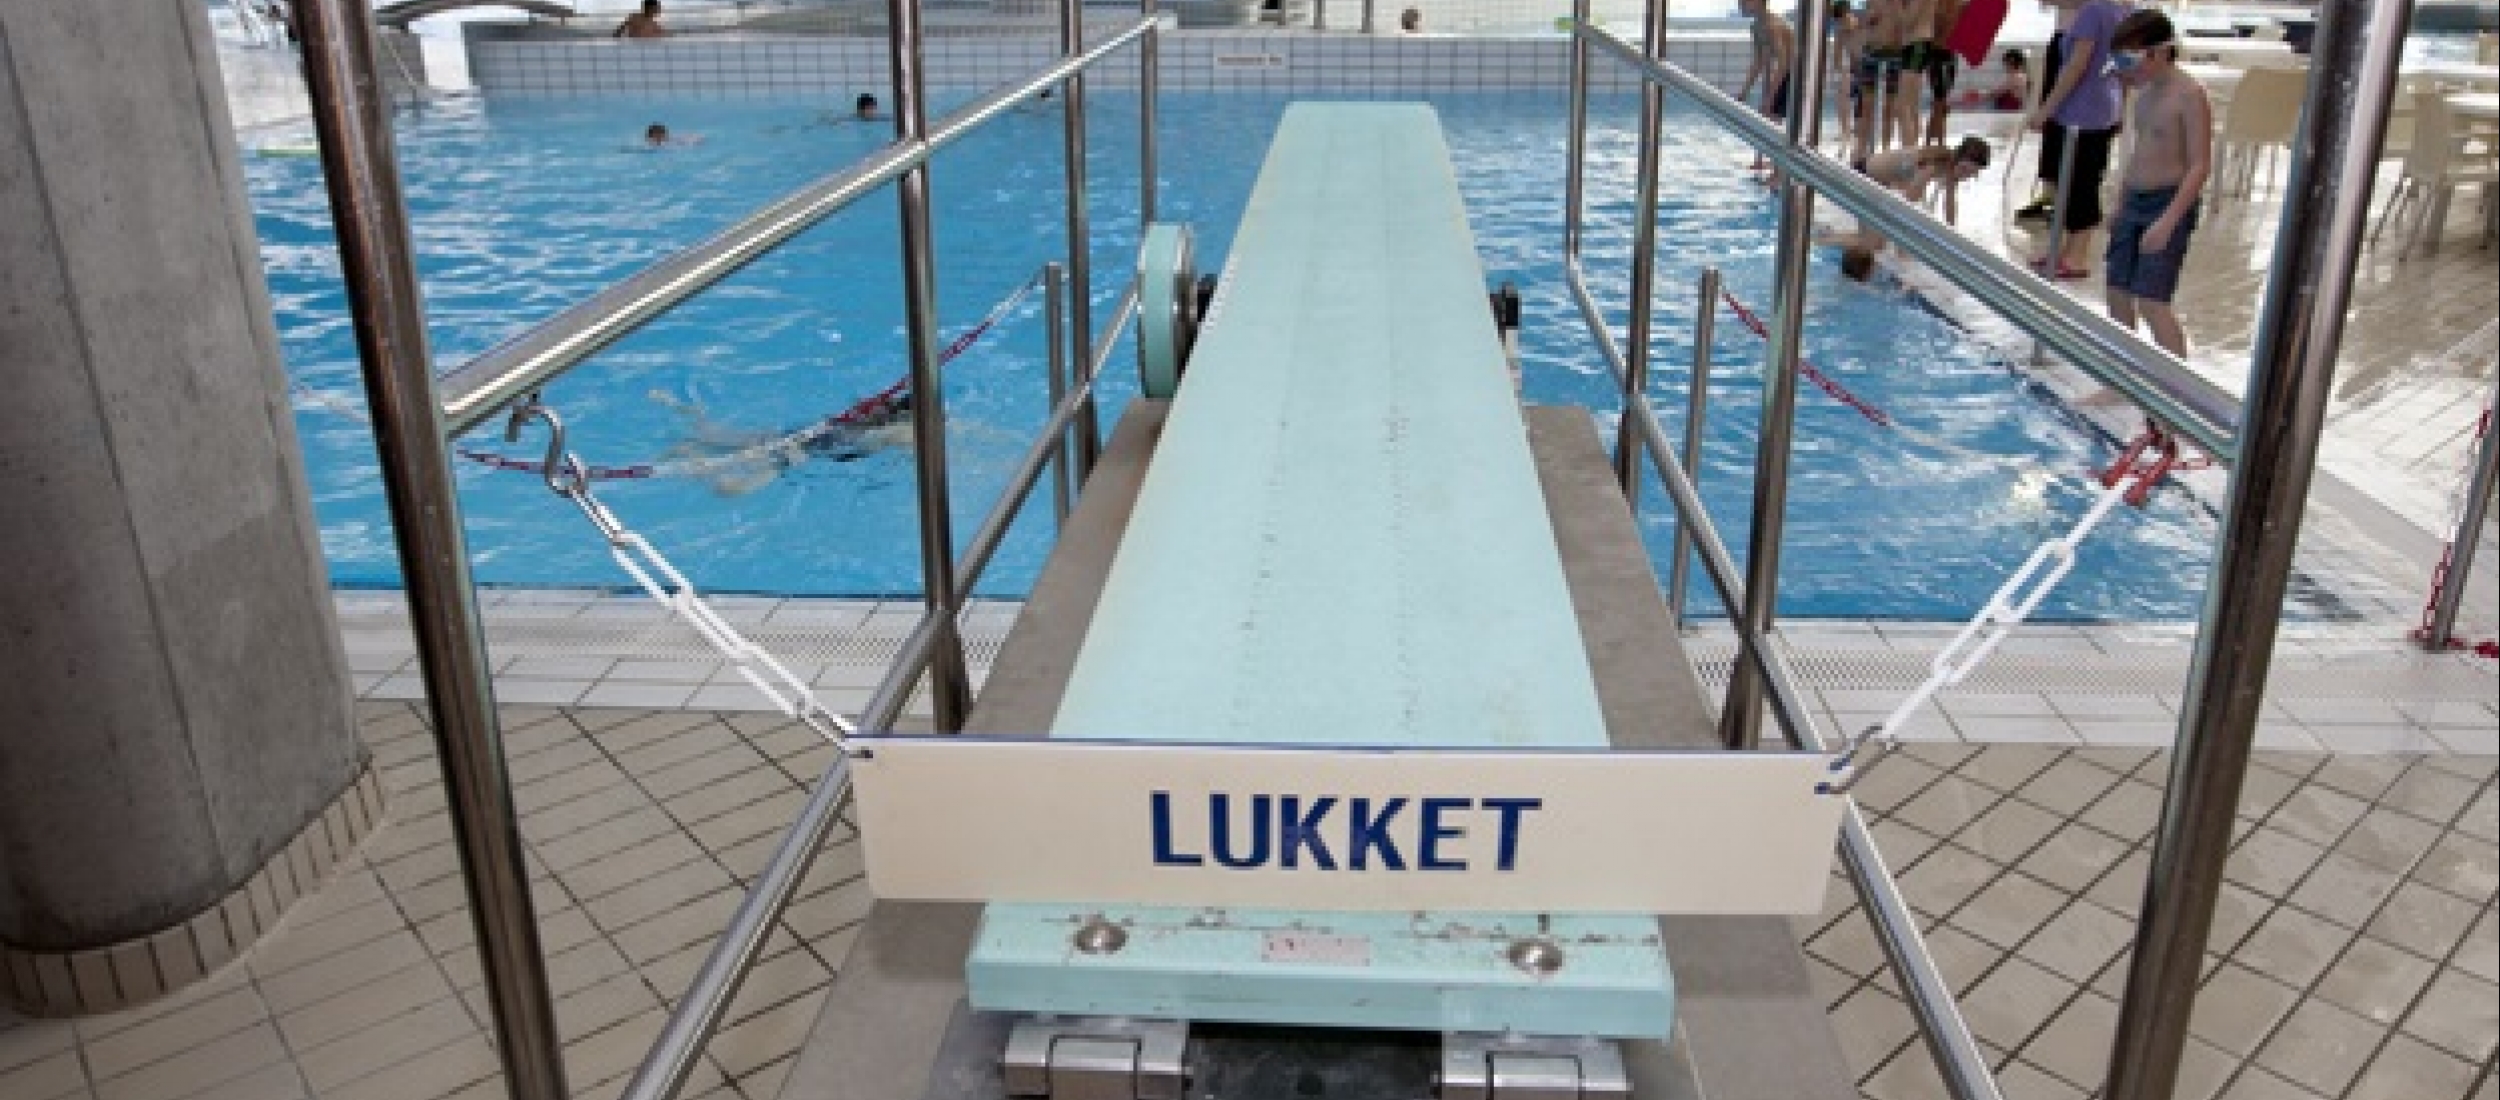 Køge: Svømmetilbud ender som maveplasker